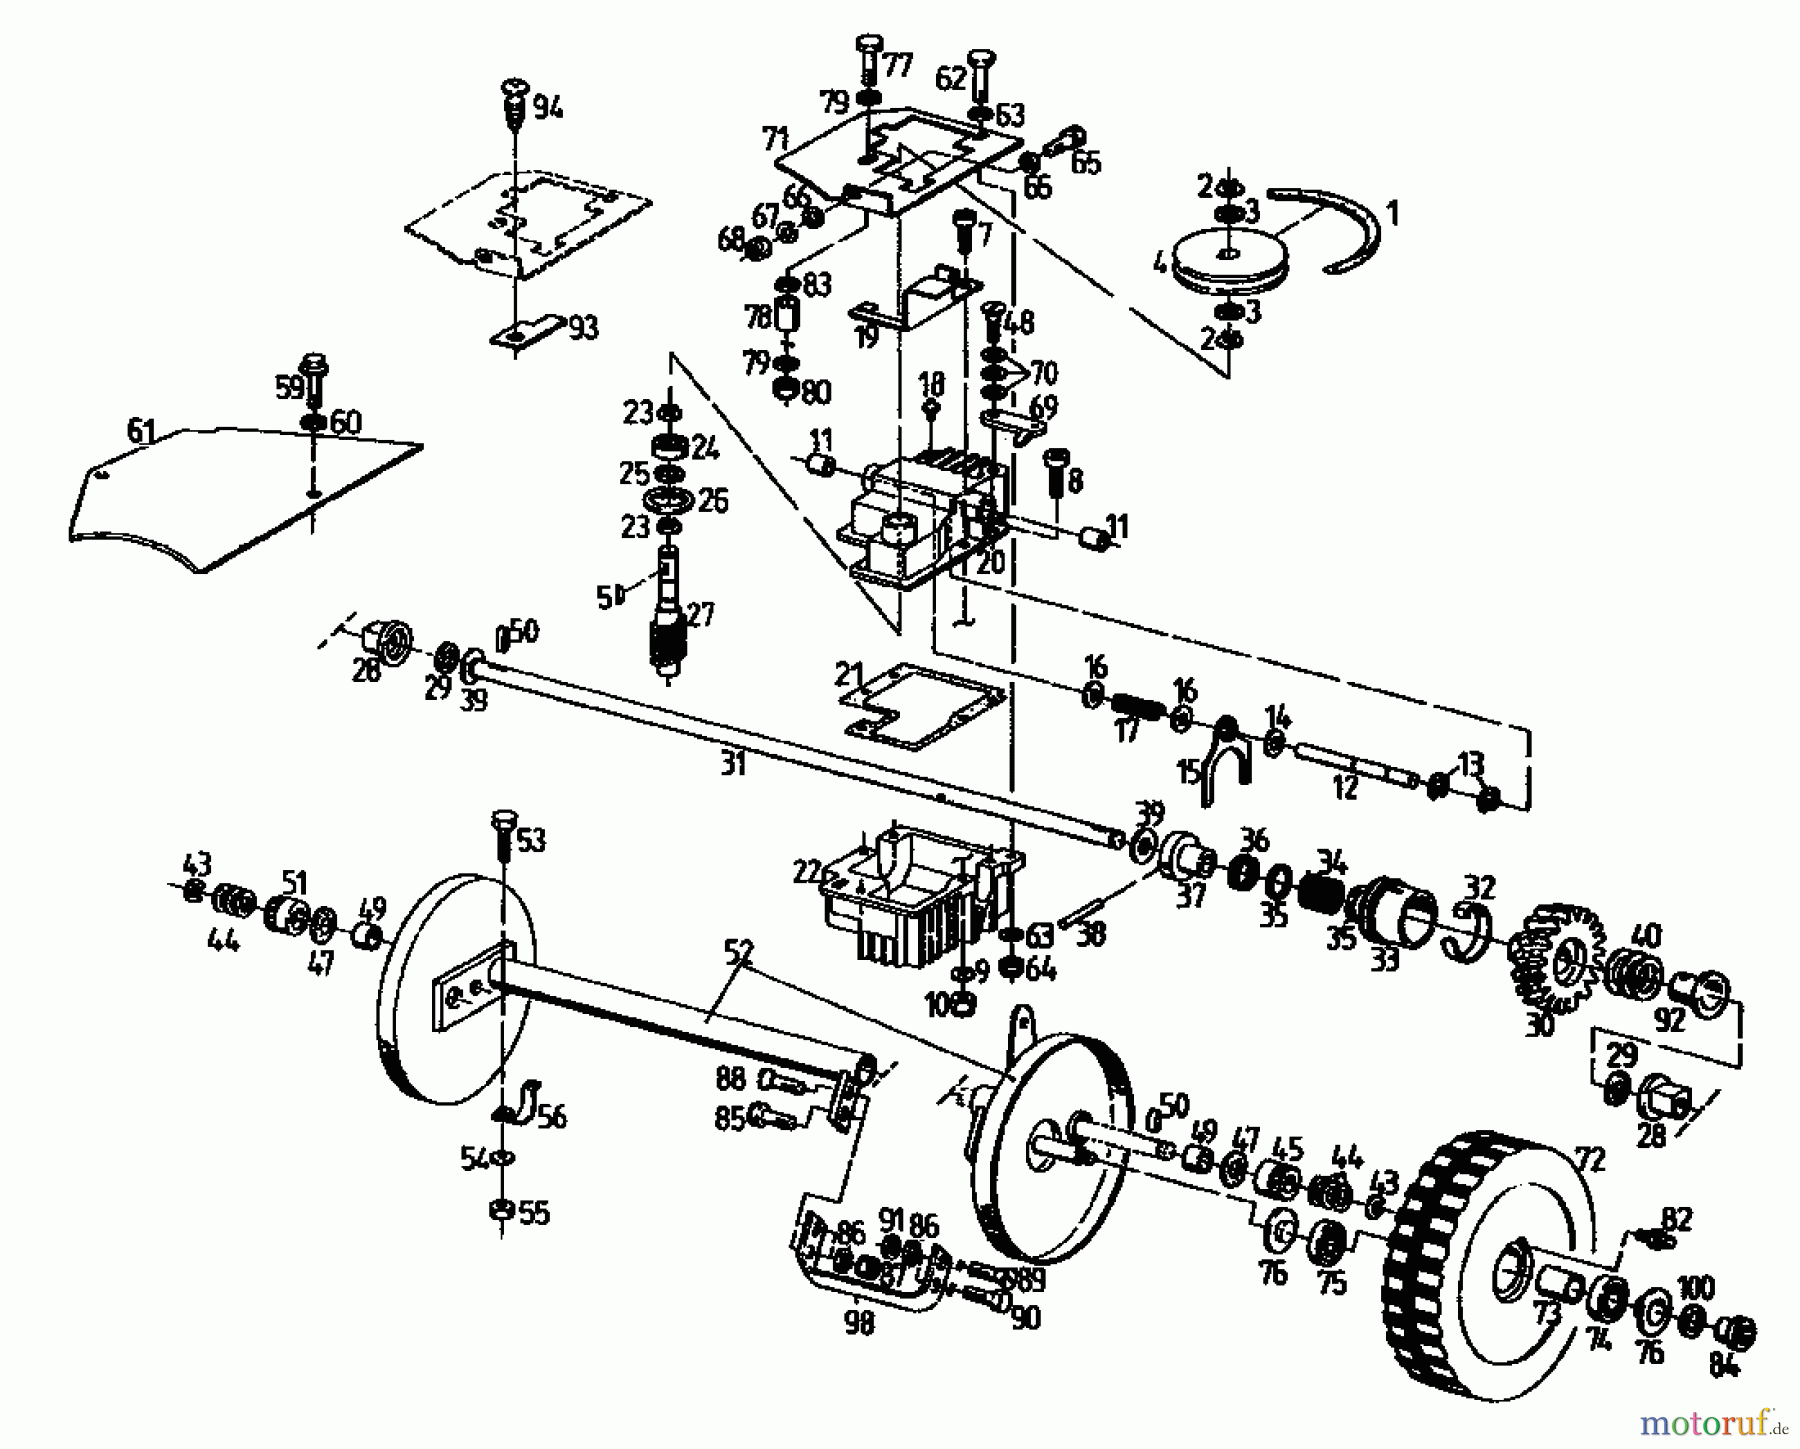  Gutbrod Petrol mower self propelled MH 534 PR 04017.03  (1994) Gearbox, Wheels